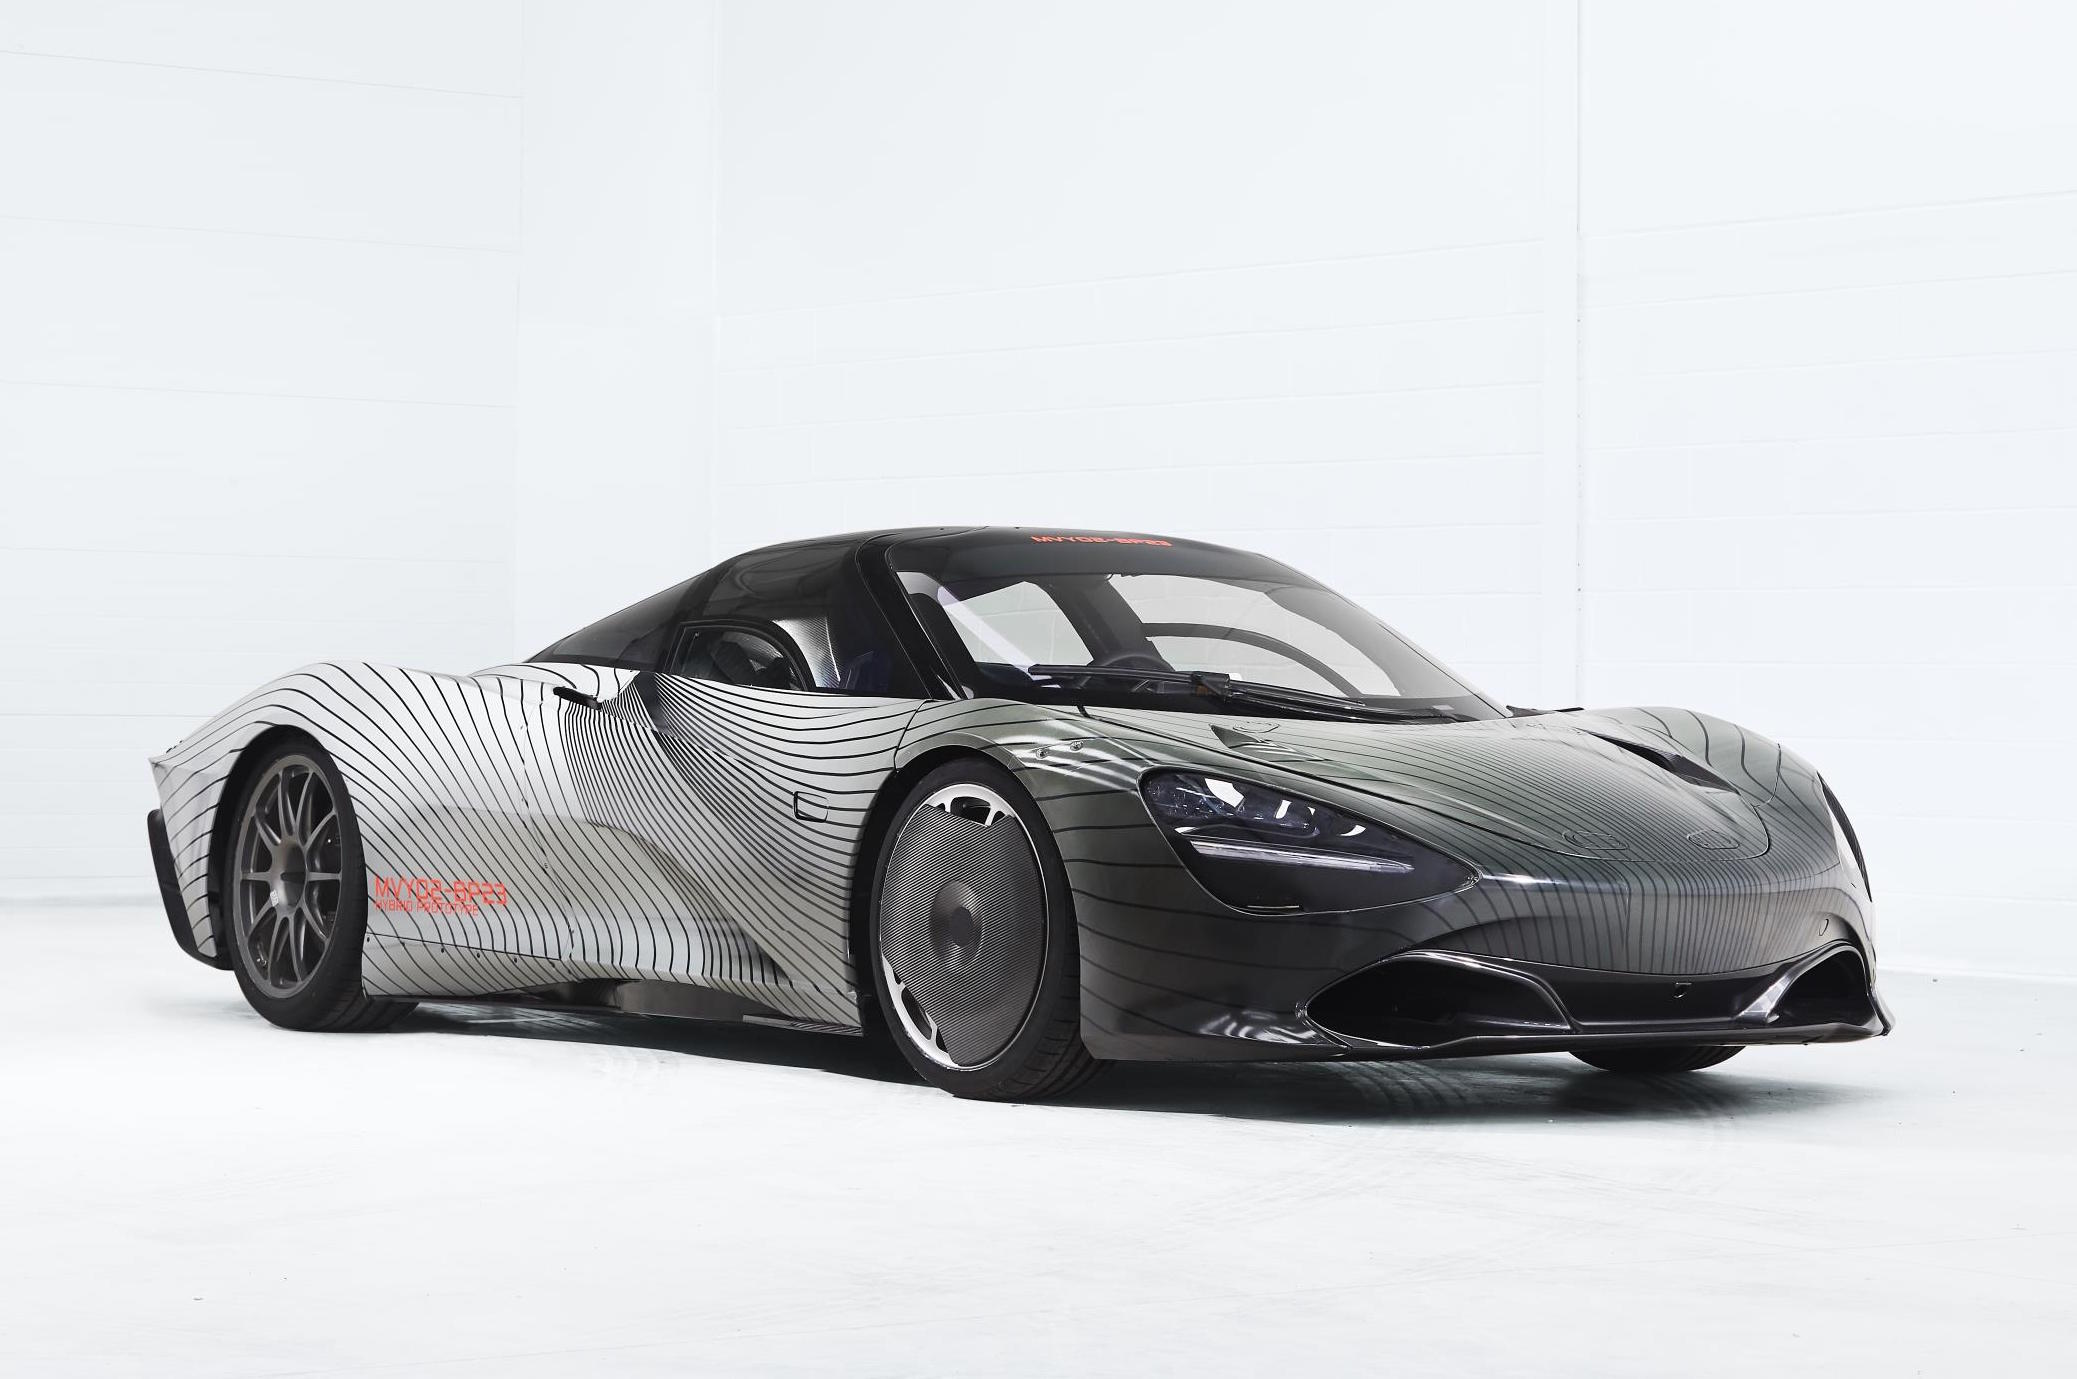 McLaren Speedtail testing begins with first complete prototype